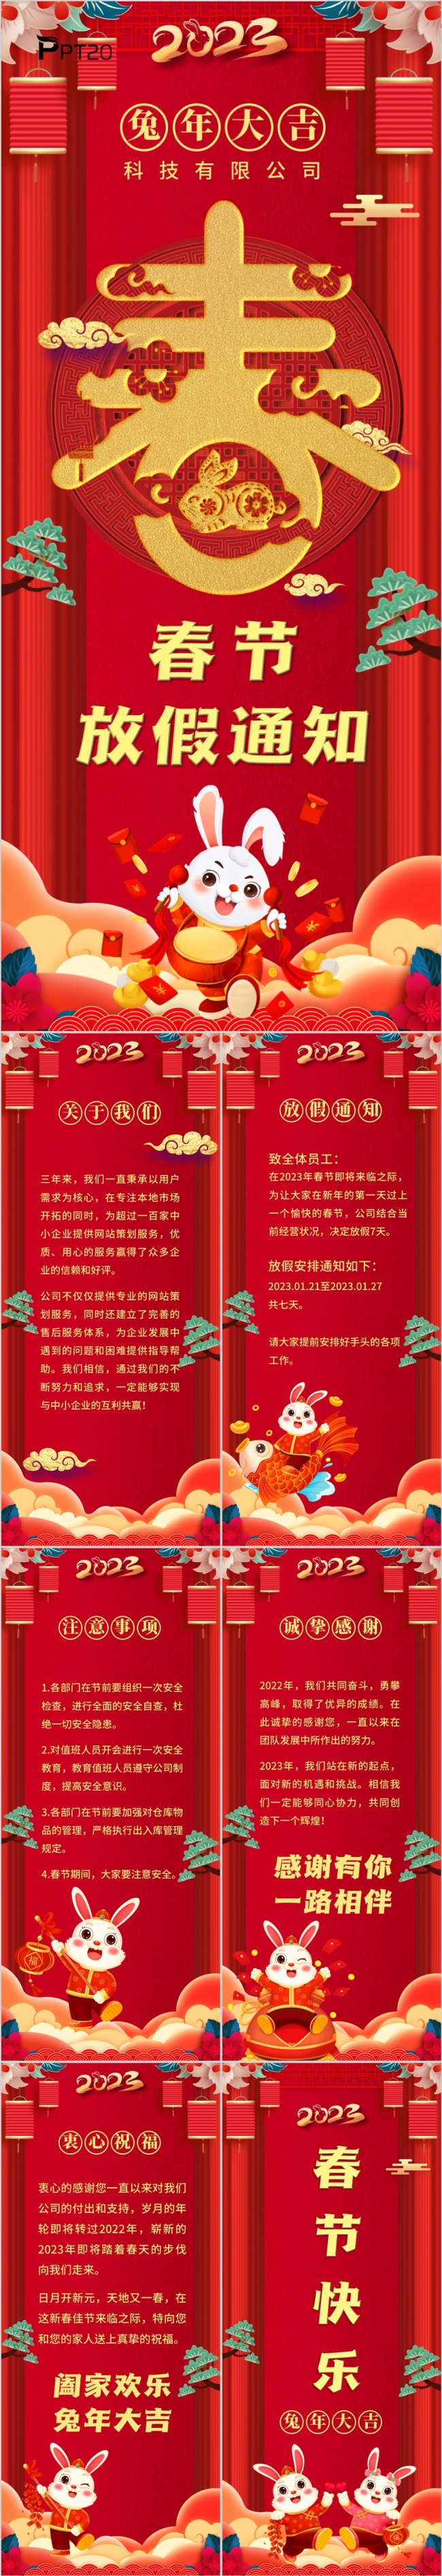 红色喜庆中国风公司春节放假通知竖版PPT模板